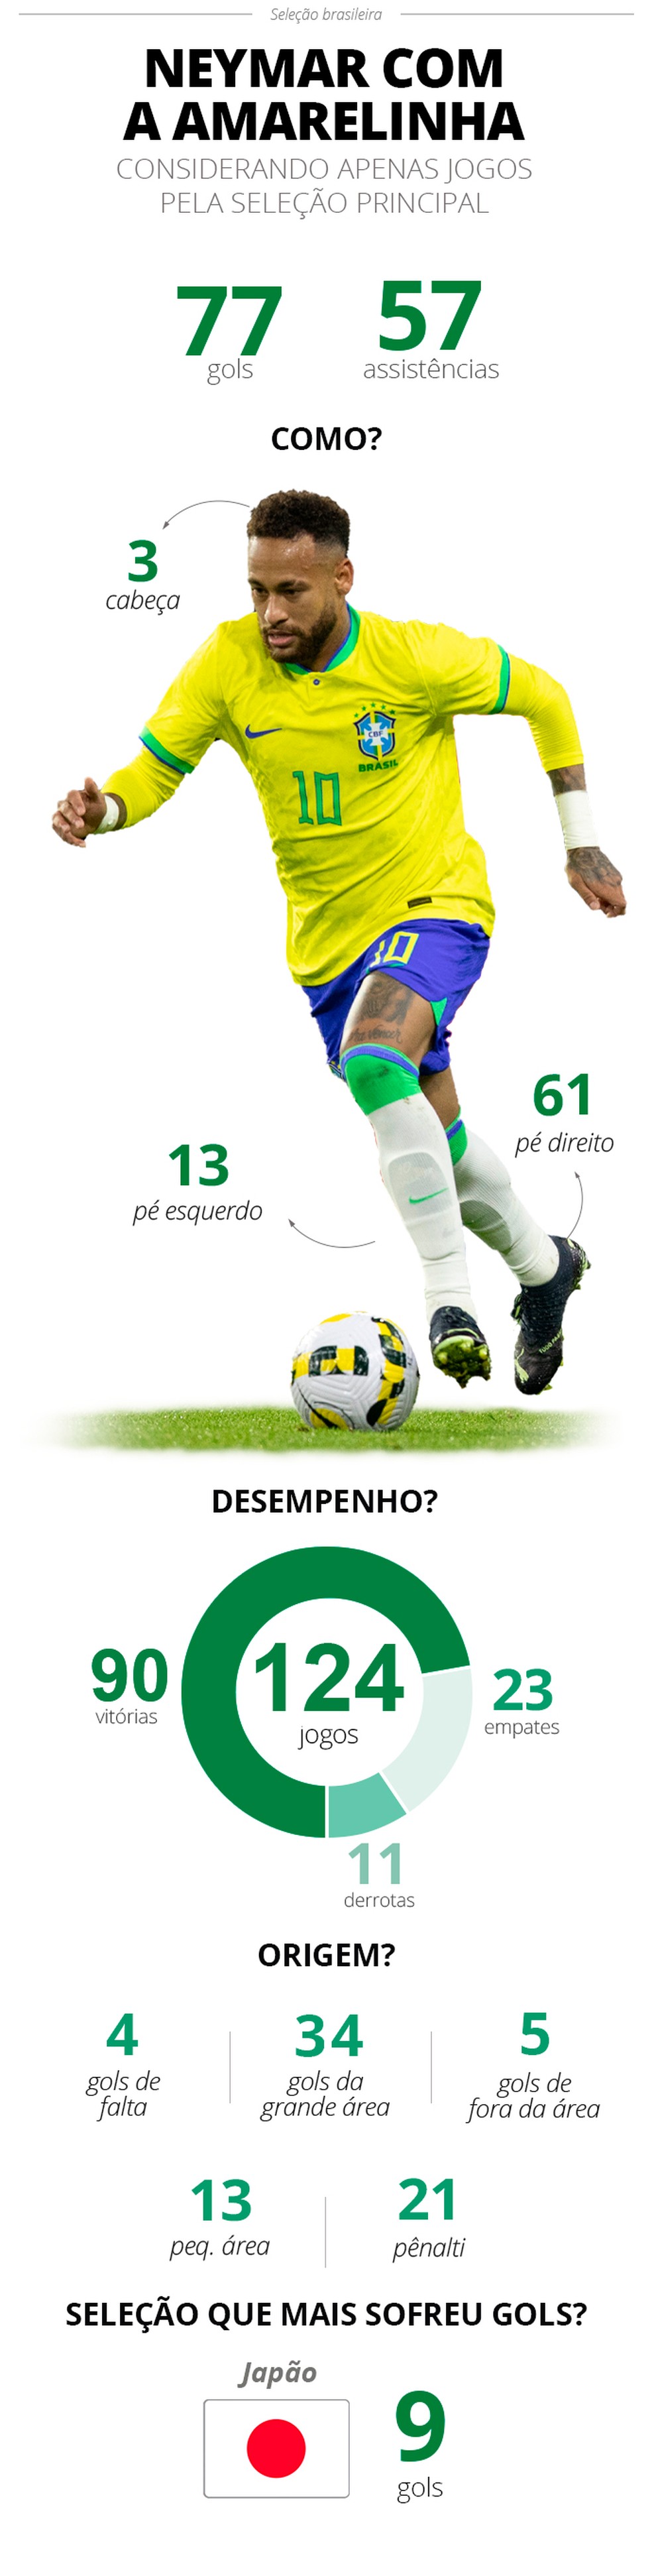 Quantos gols o Neymar fez pela Seleção Brasileira?